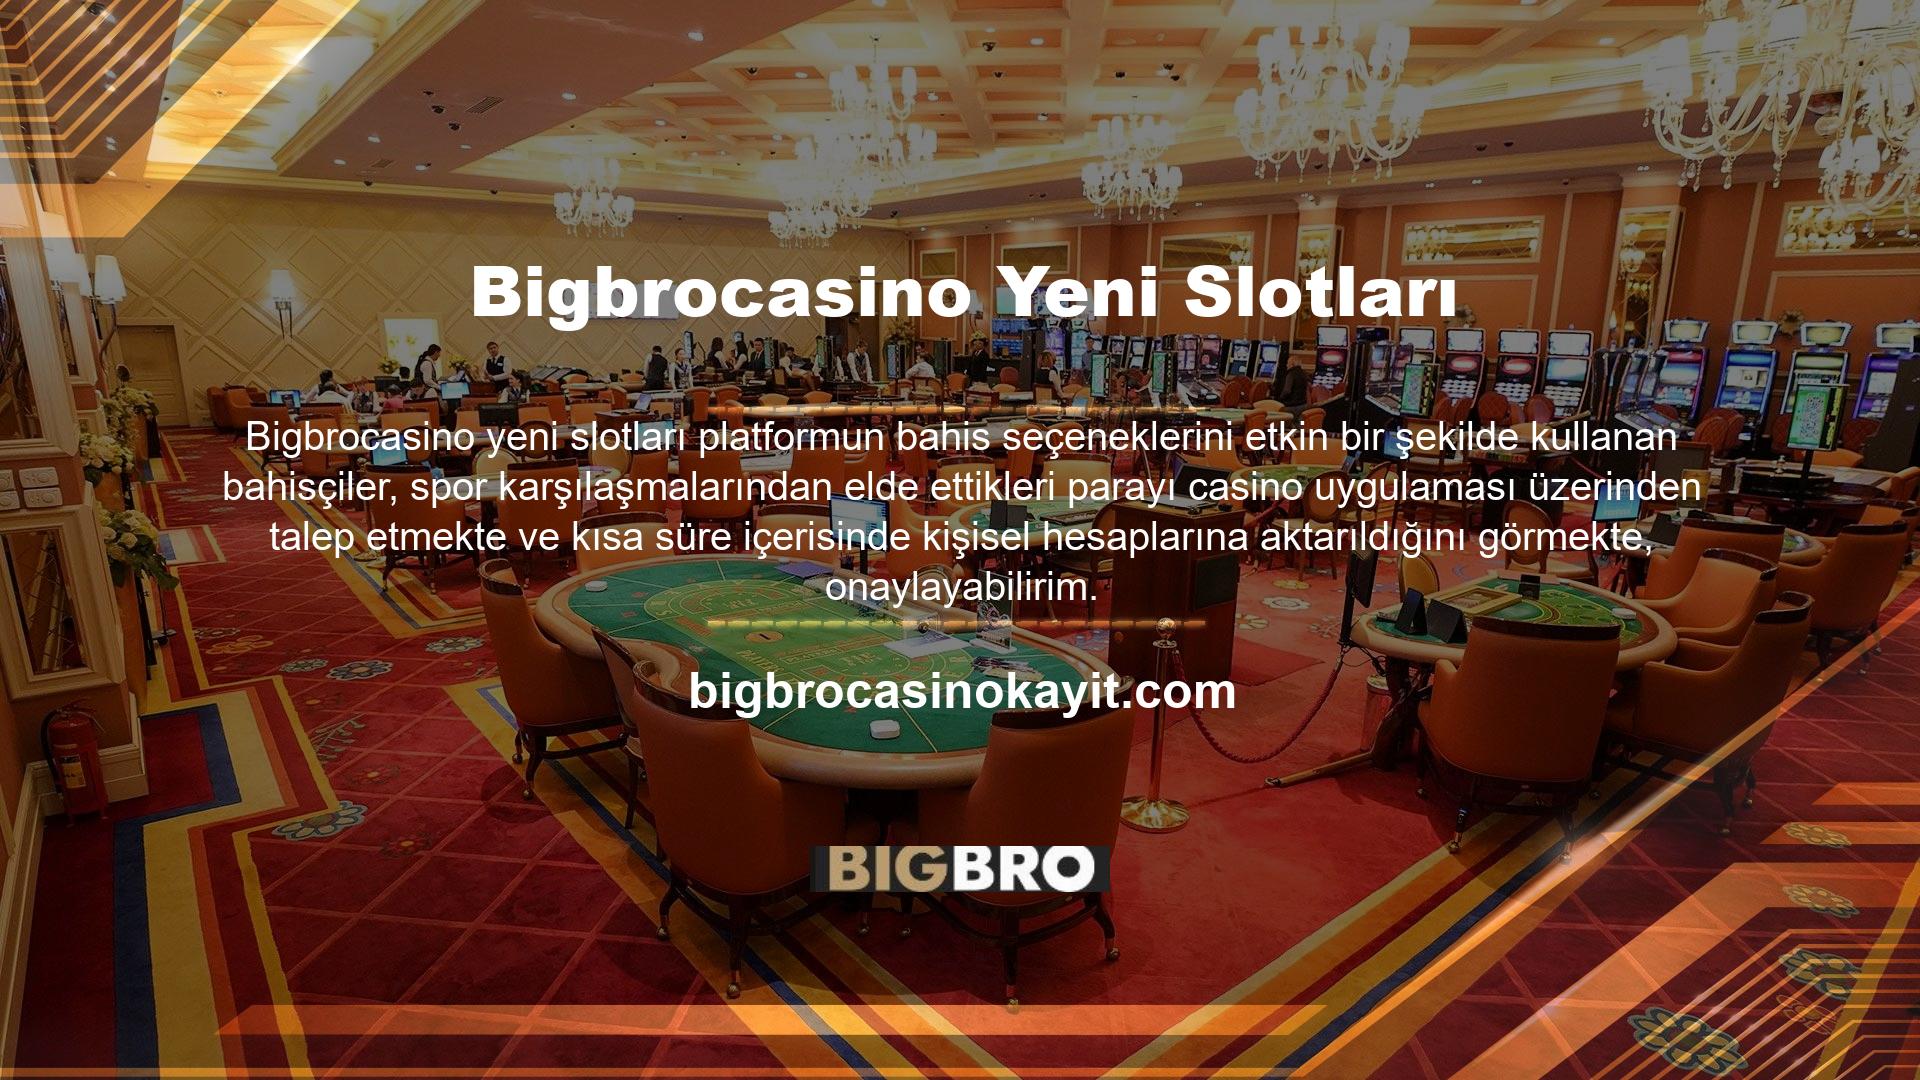 Bigbrocasino bahis sitesi canlı yardım hizmeti, tüm sorunlara kısa sürede çözüm bulmak ve üyelerden ve ziyaretçilerden gelen tüm soruları yanıtlamak için profesyonel operatörlerle çalışmaya devam ediyor